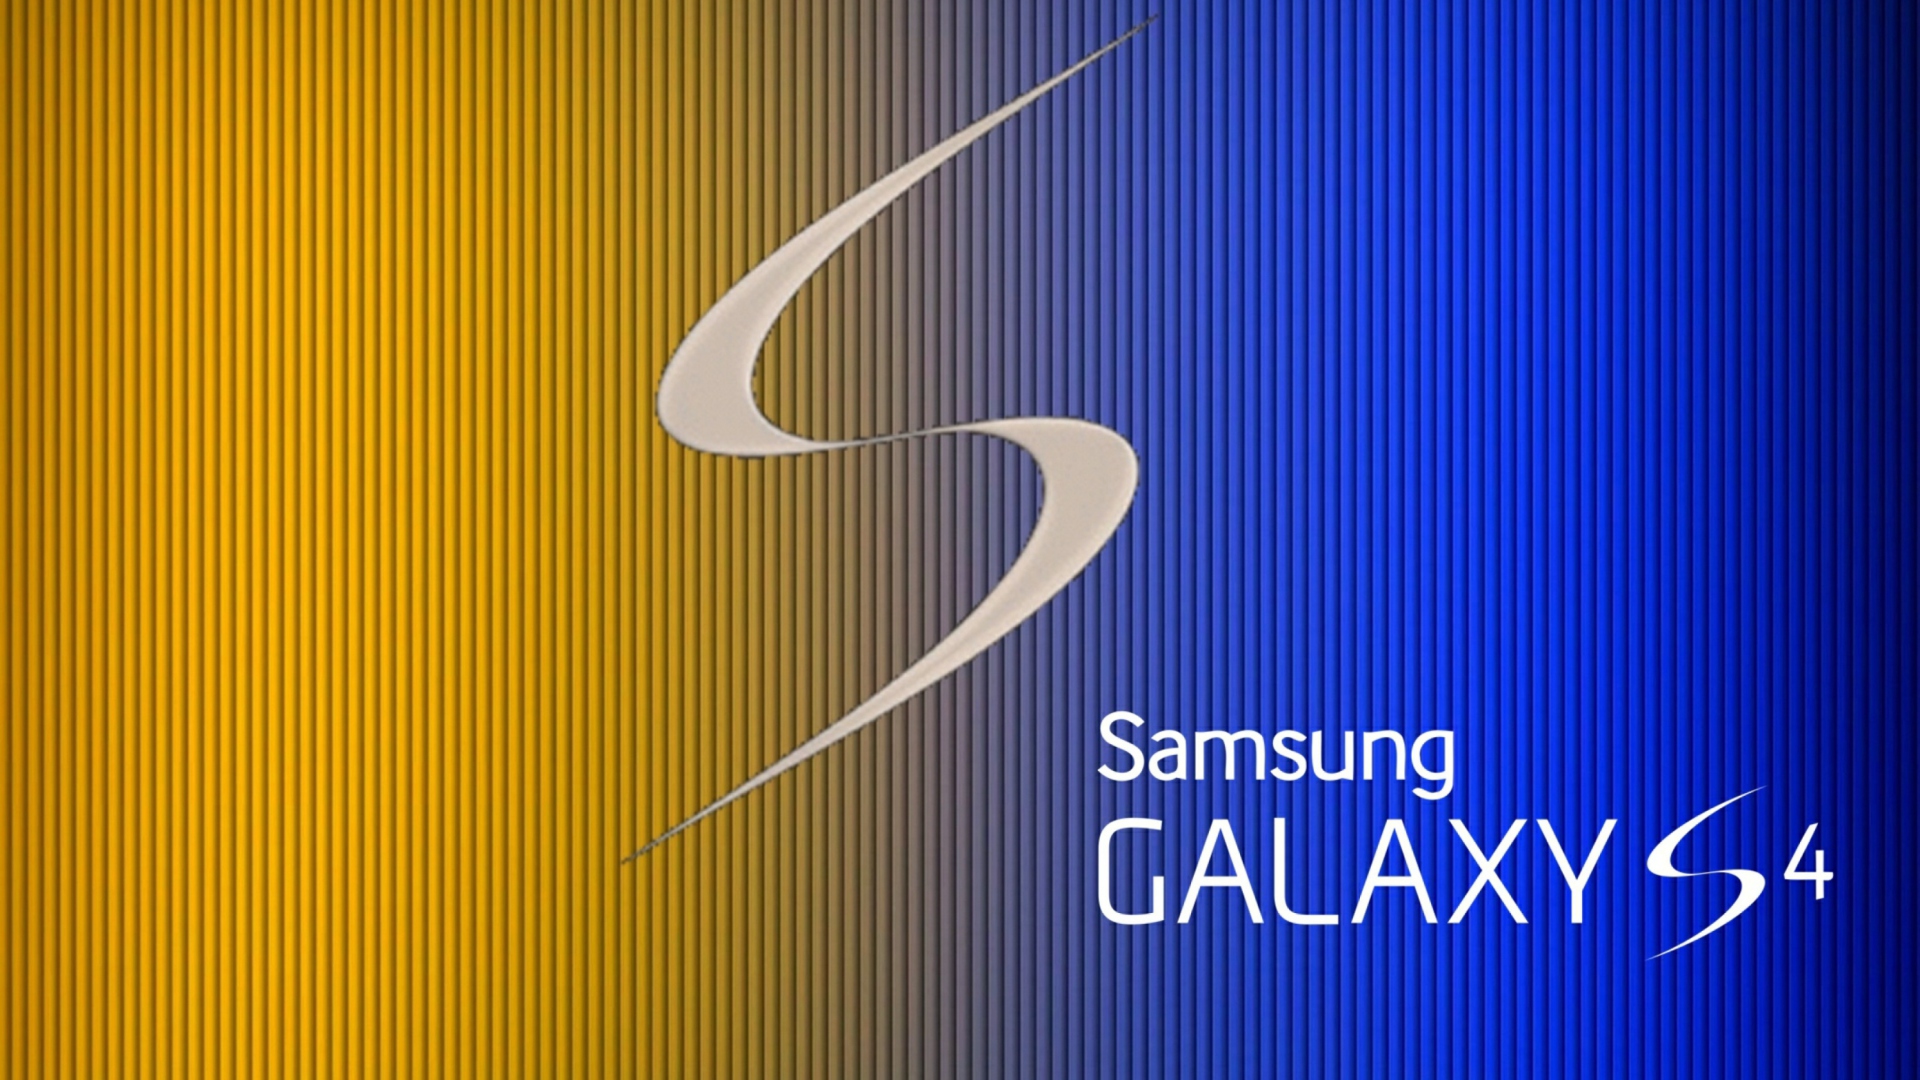 S Galaxy S4 wallpaper 1920x1080